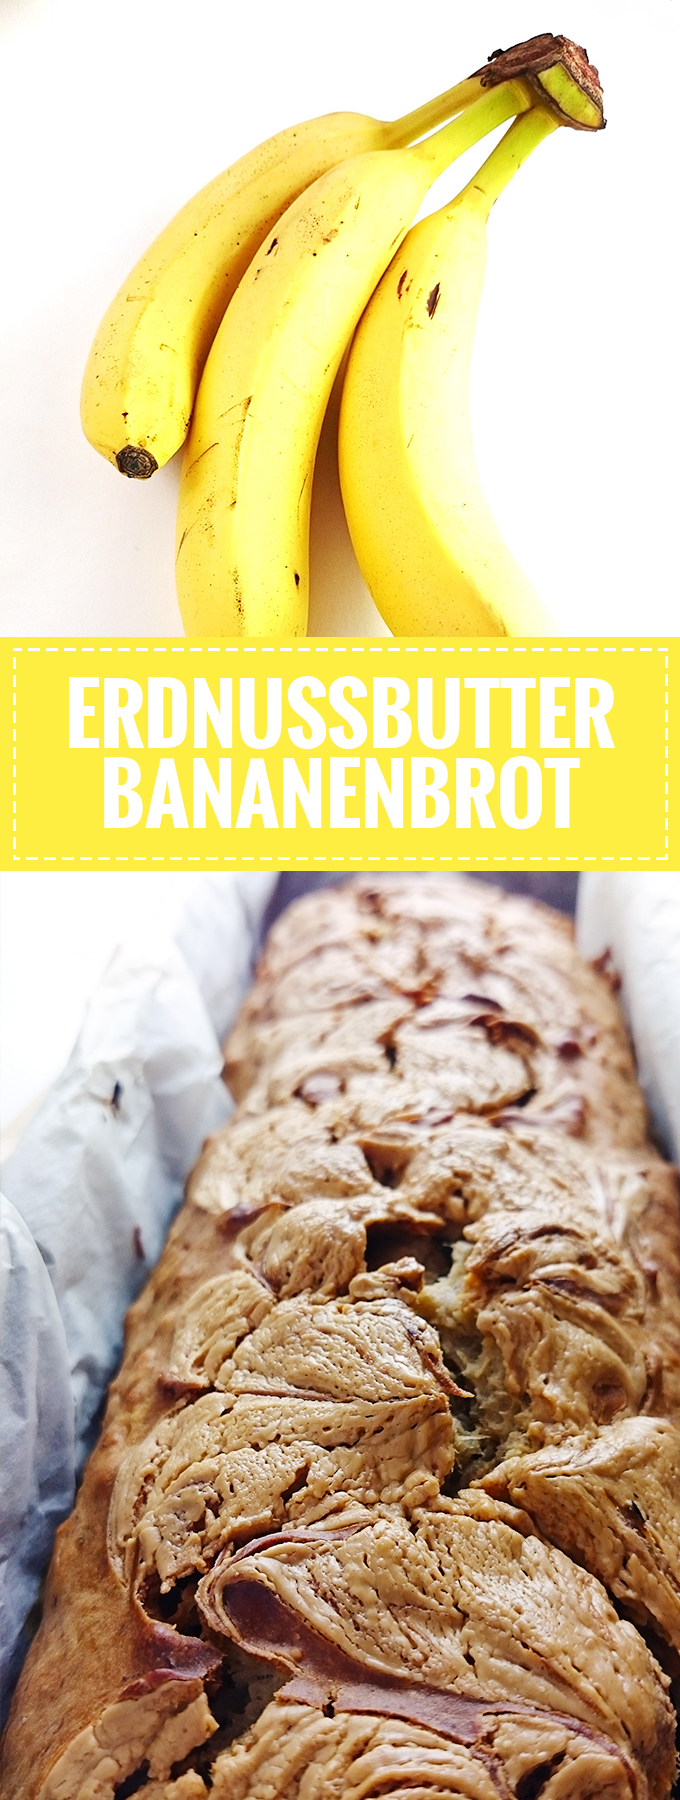 Super einfaches und saftiges Erdnussbutter-Bananenbrot // Knabberkult.de